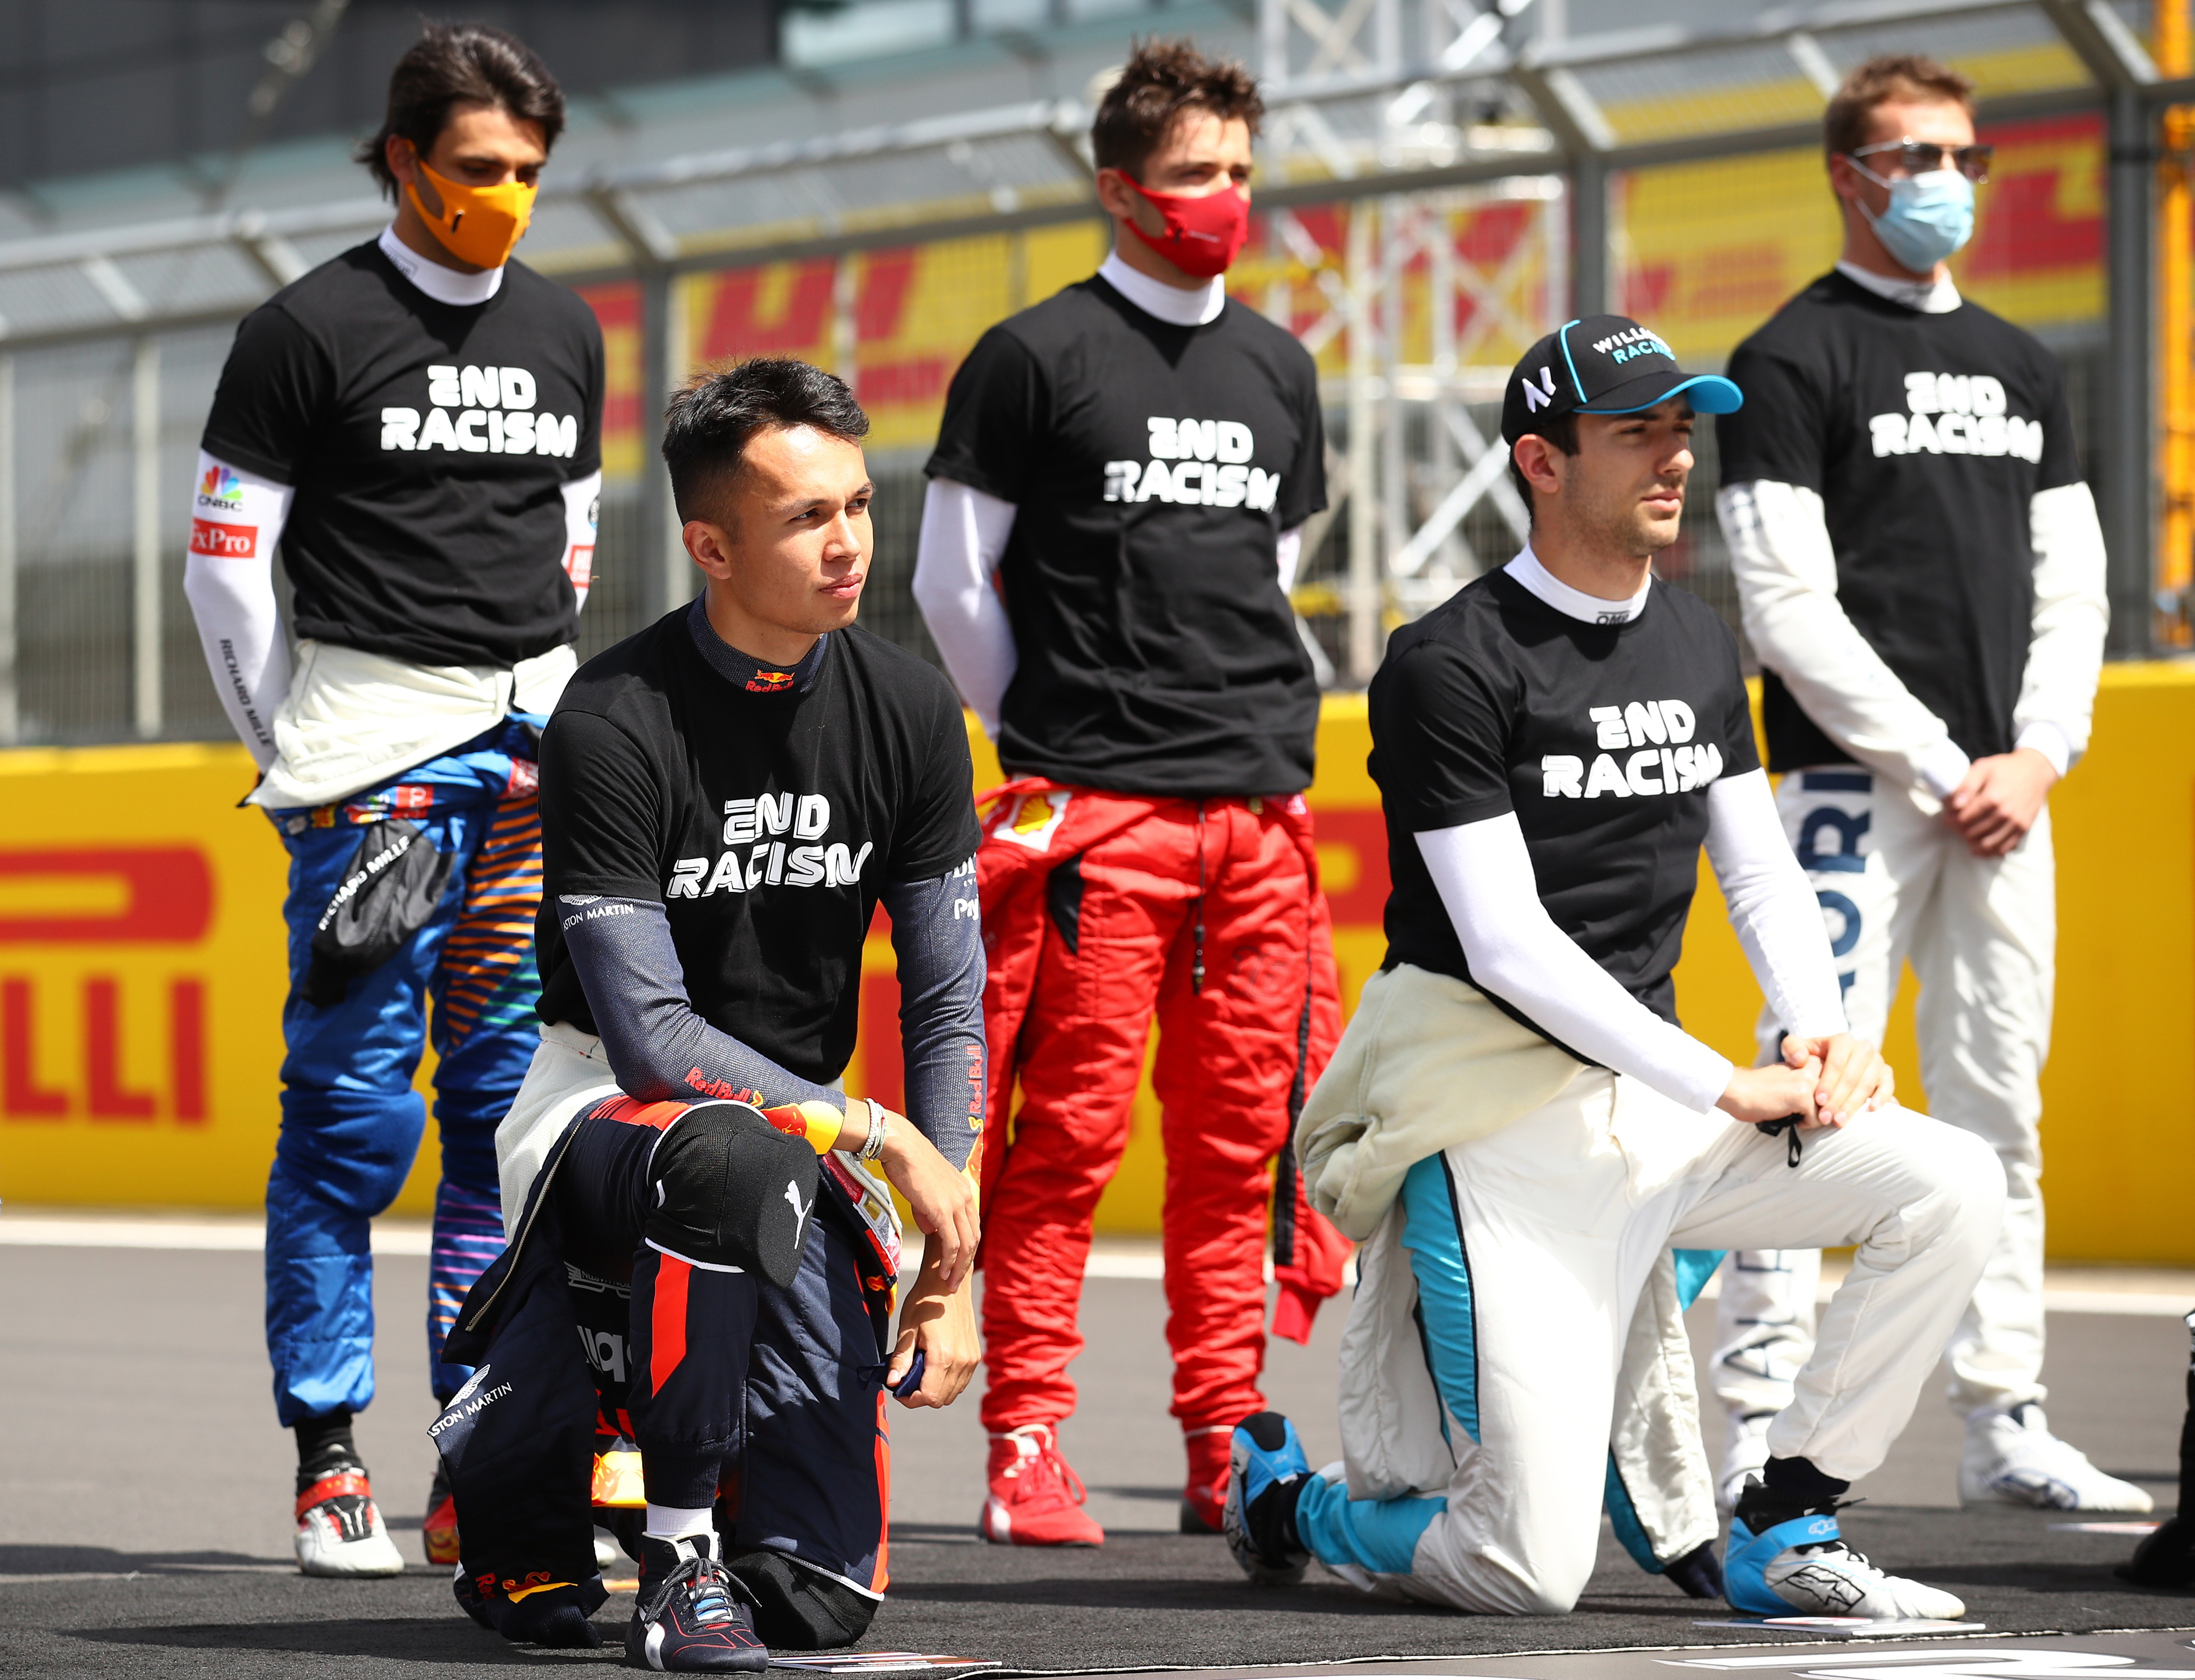 Los pilotos de F1 volvieron a realizar un gesto contra el racismo antes del GP de Gran Bretaña (Fotos)